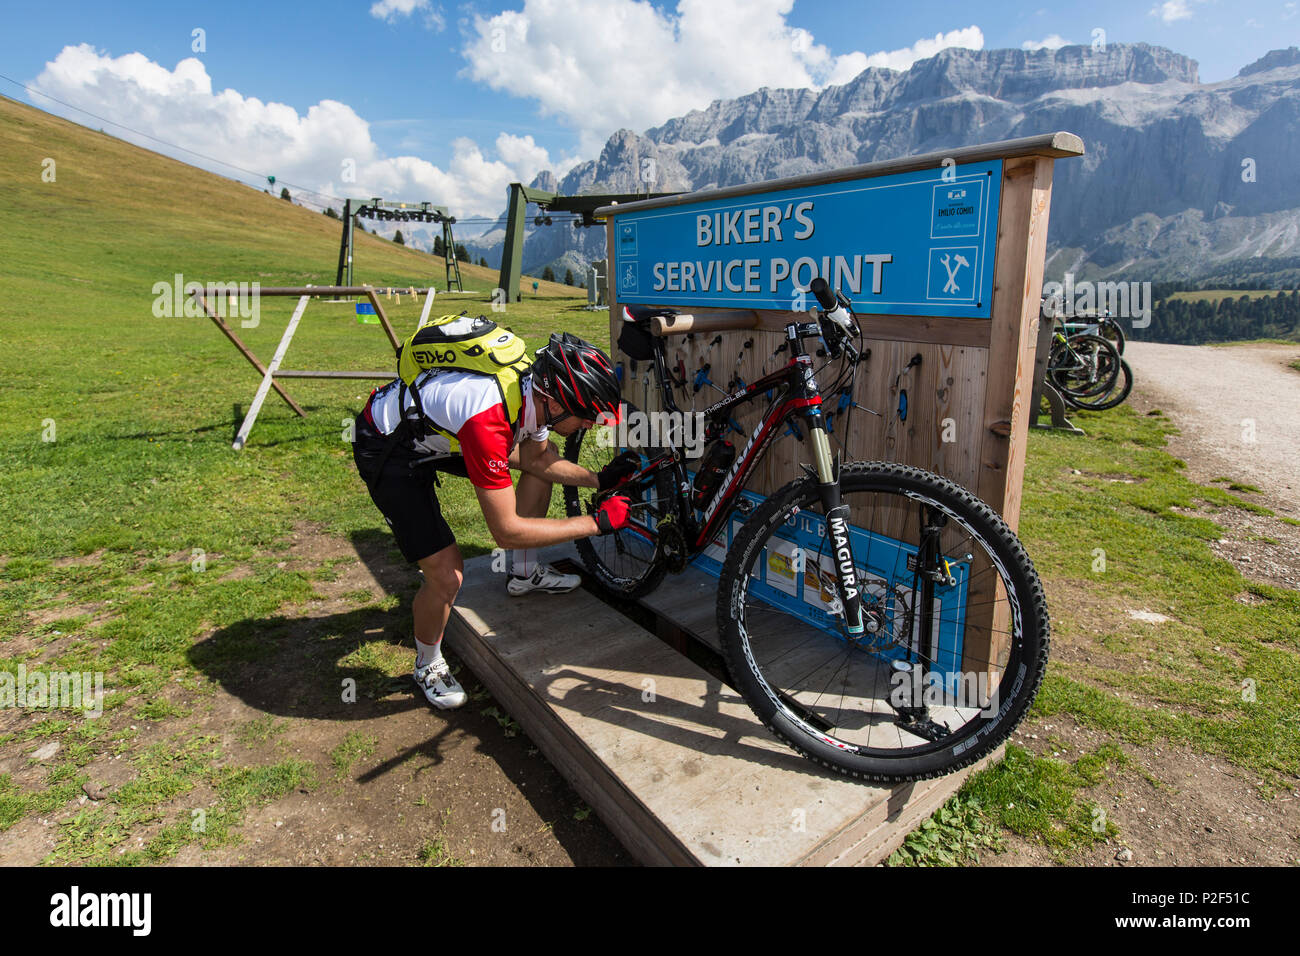 Biker sein Fahrrad im Service Point der Emilio Comici Hütte am Langkofel,  Trentino Südtirol, Italien Instandsetzung Stockfotografie - Alamy